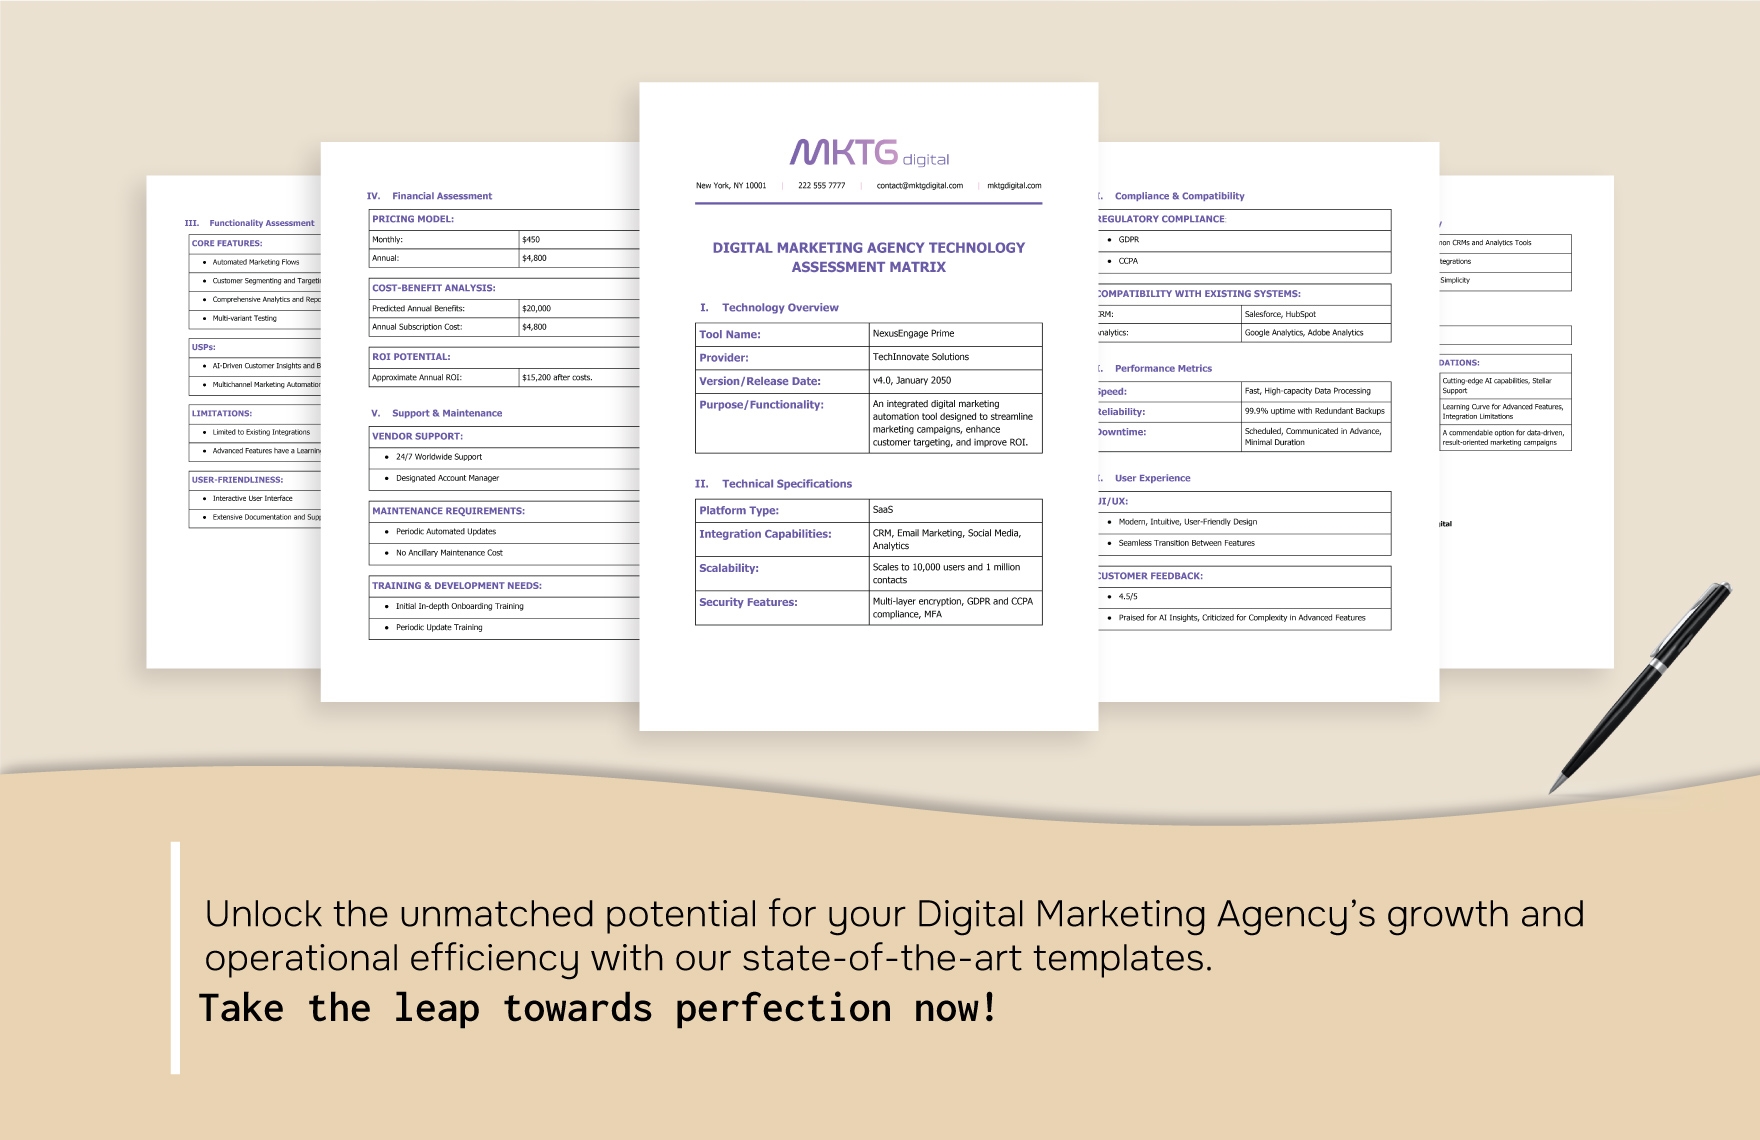 Digital Marketing Agency Technology Assessment Matrix Template